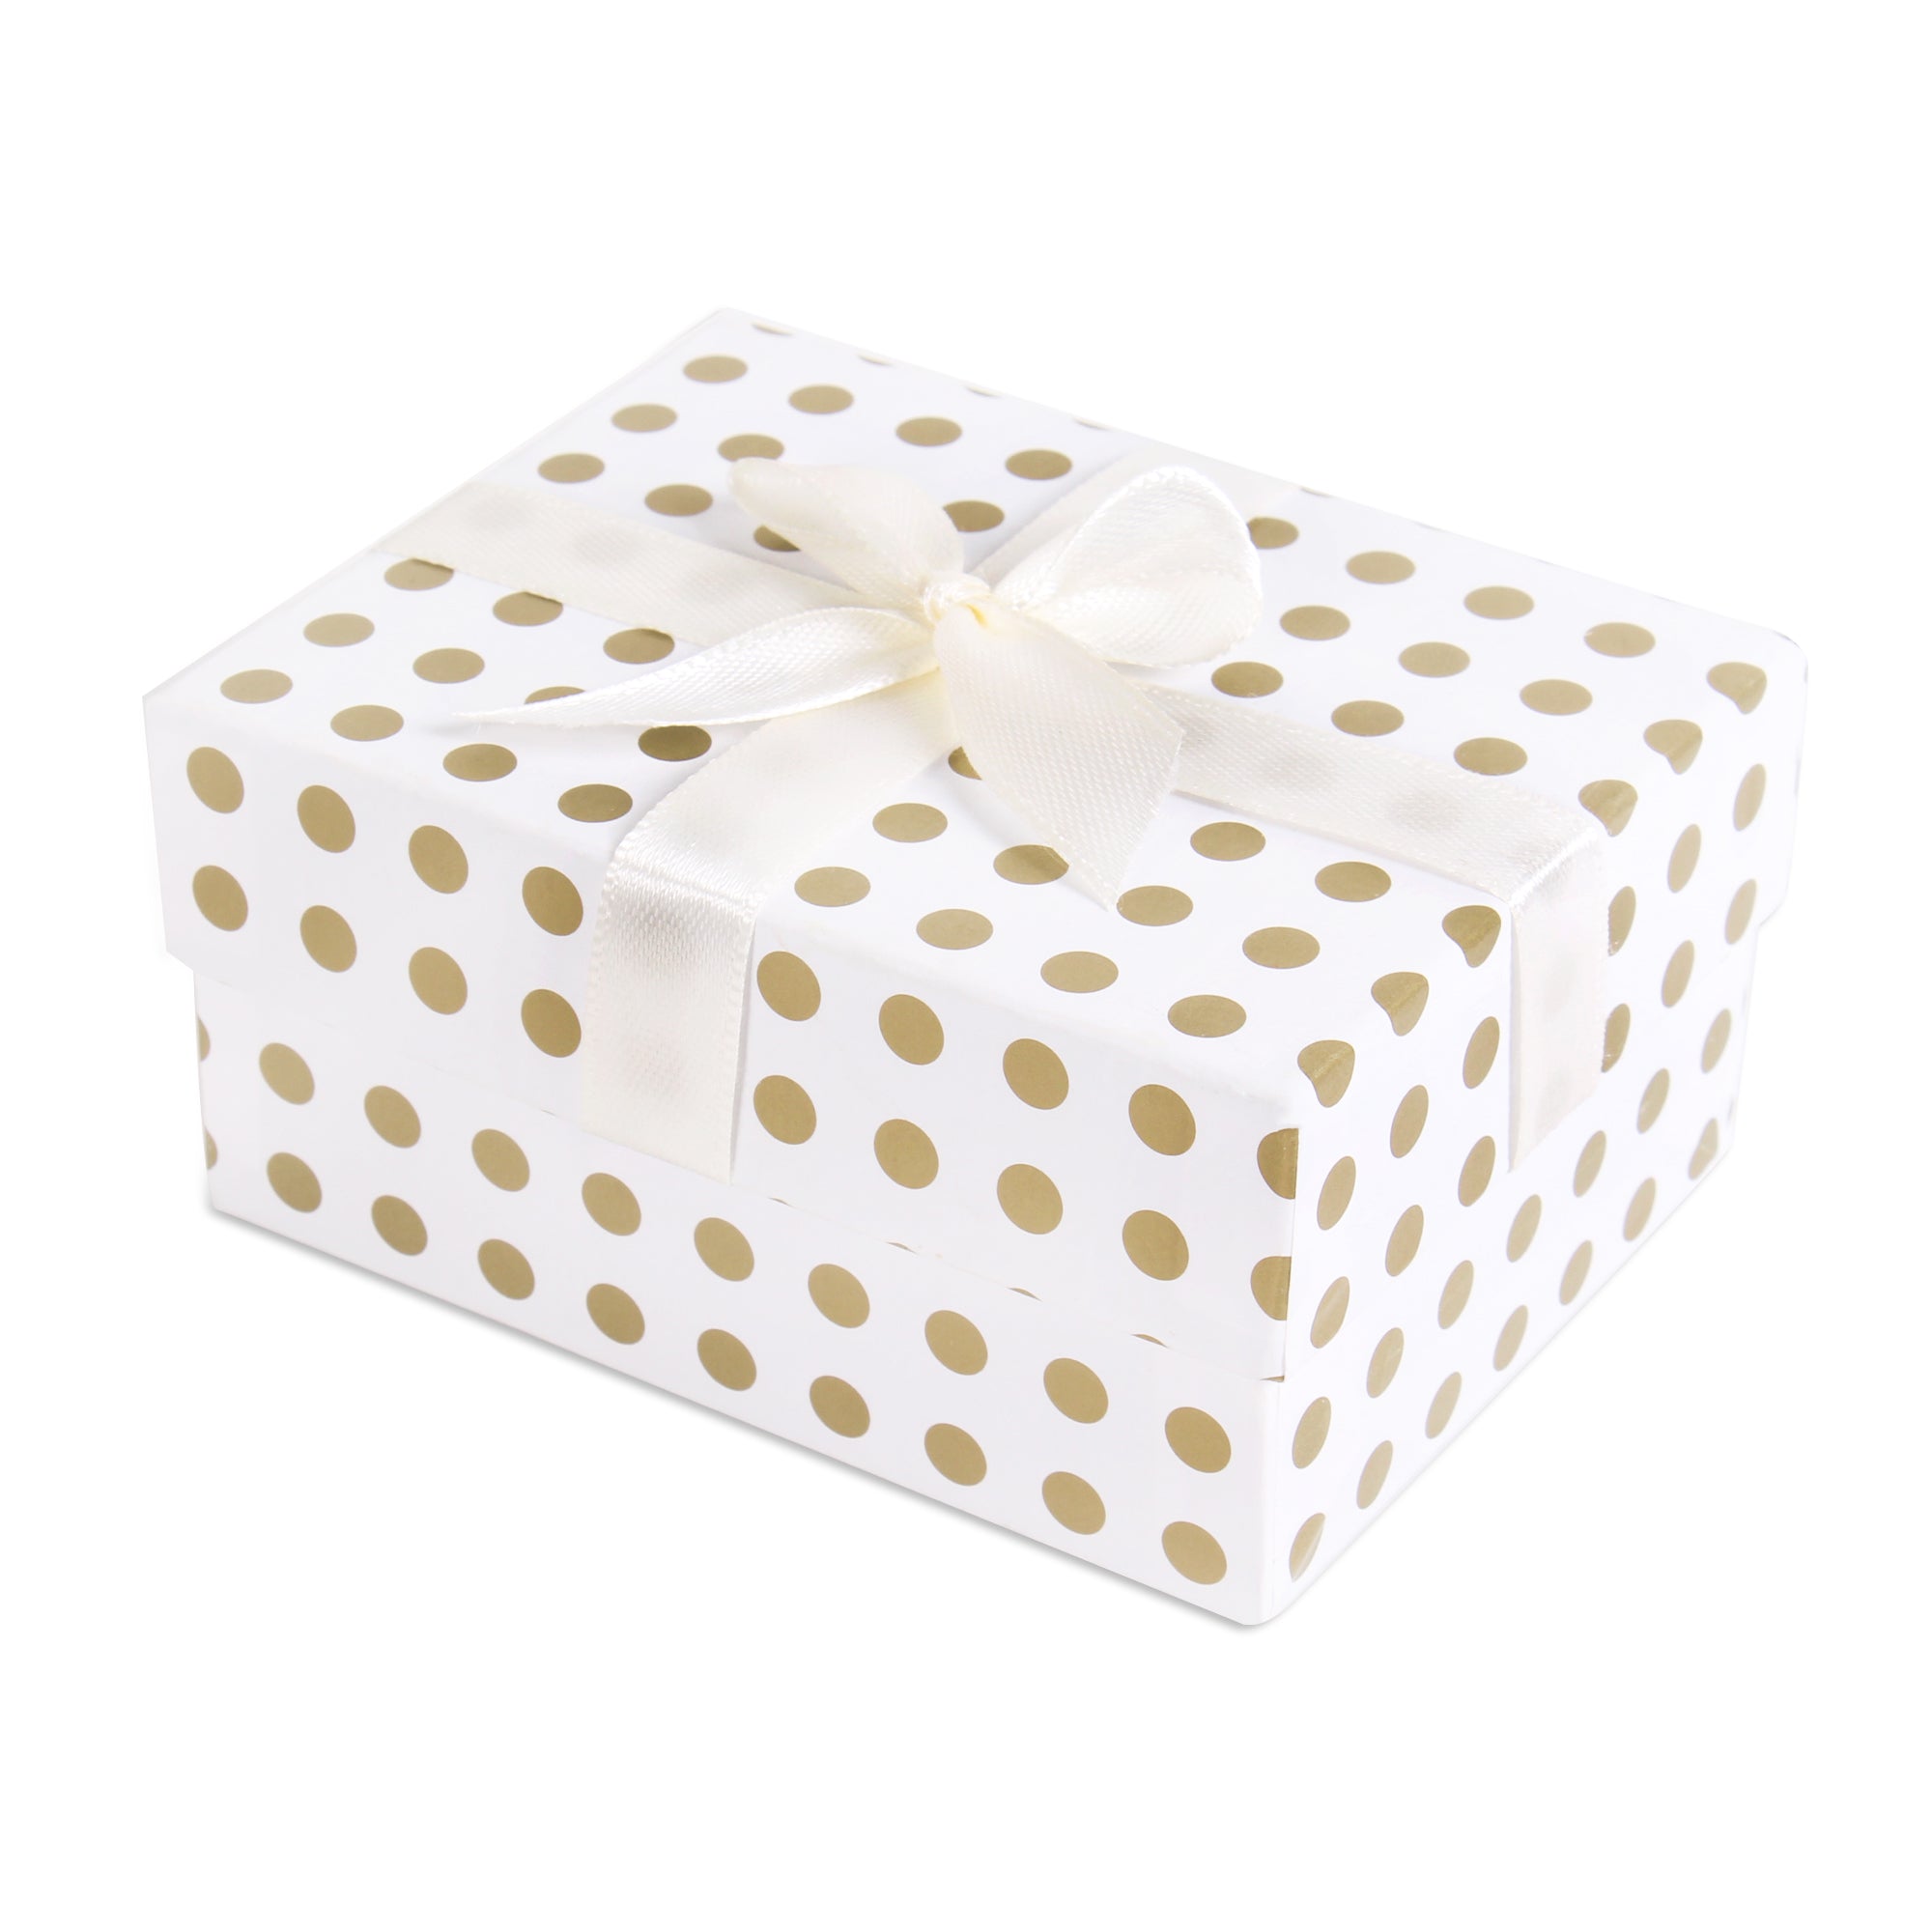 Gift Box Golden Polka L10.5 X W8 X D5.4(cm) 1pc